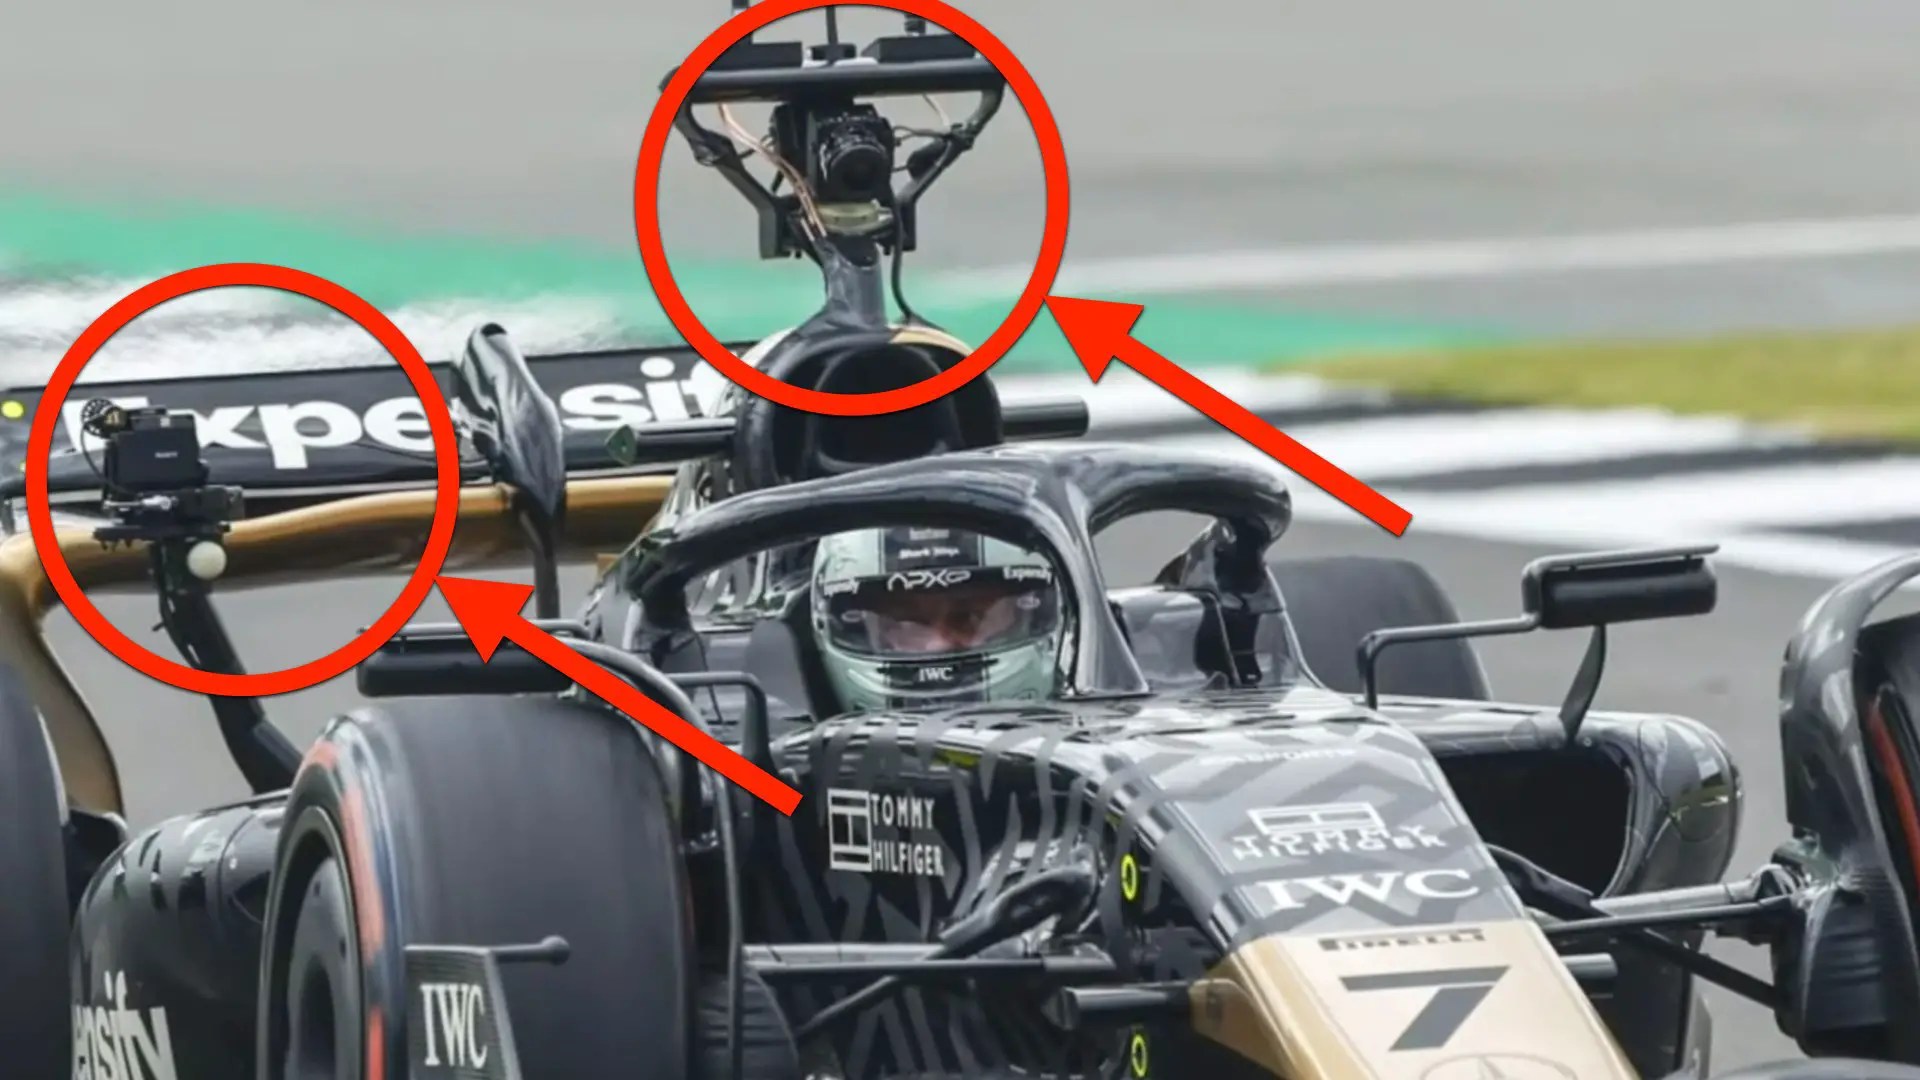 Две камеры на гоночной машине